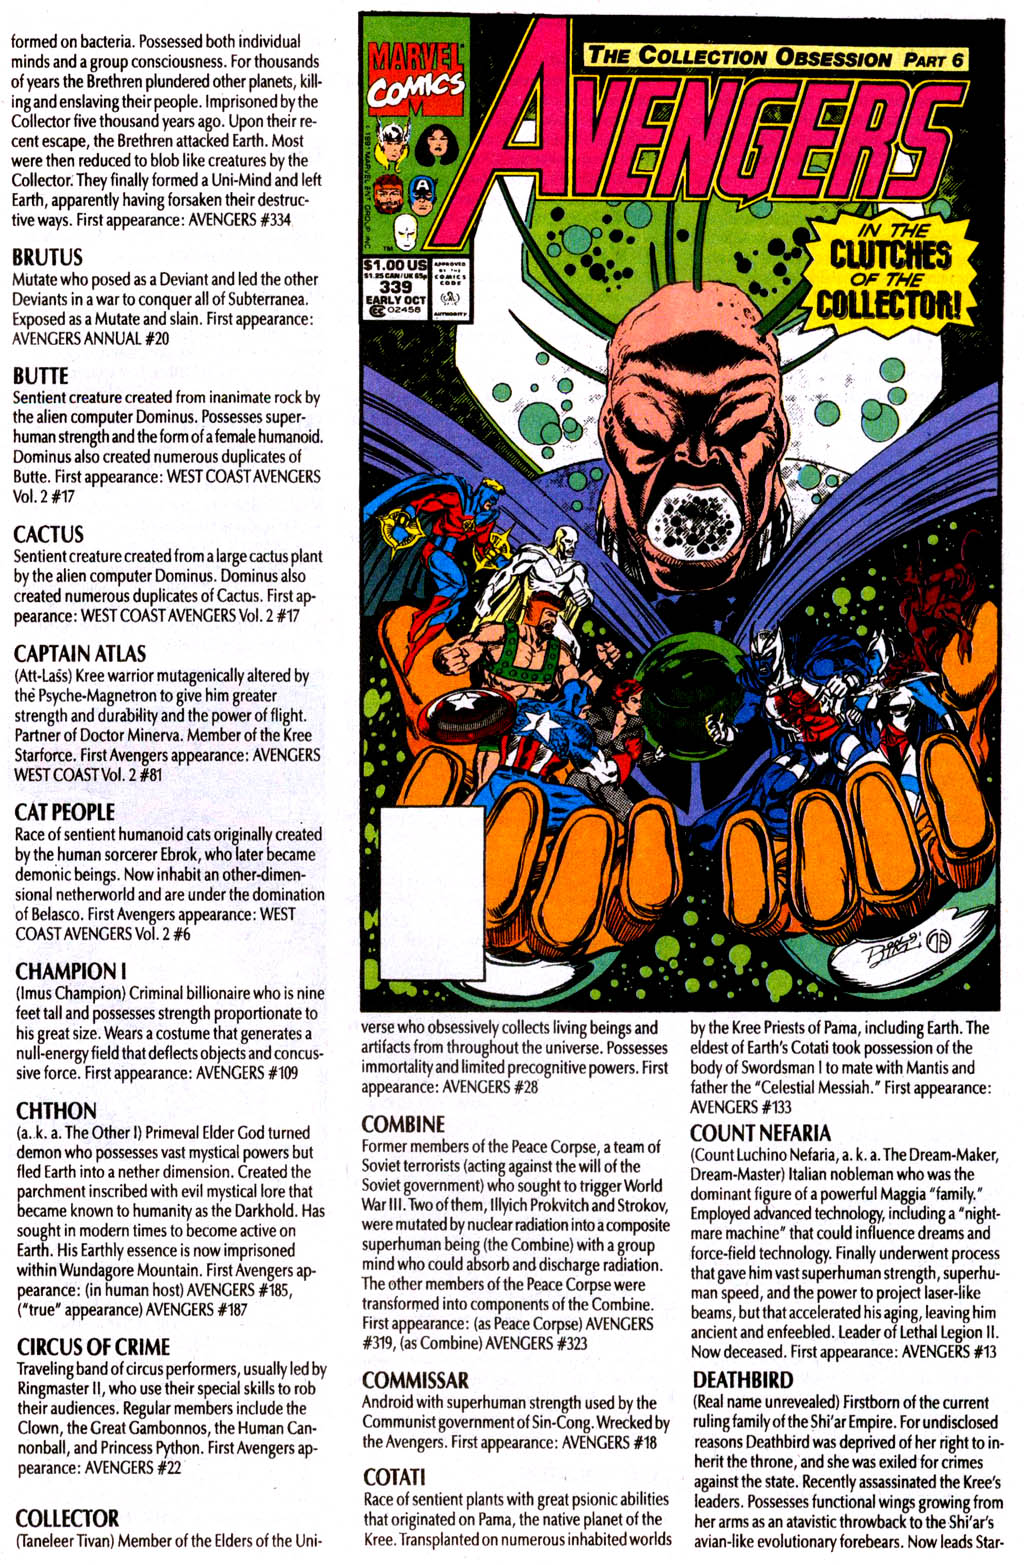 Read online The Avengers Log comic -  Issue # Full - 33